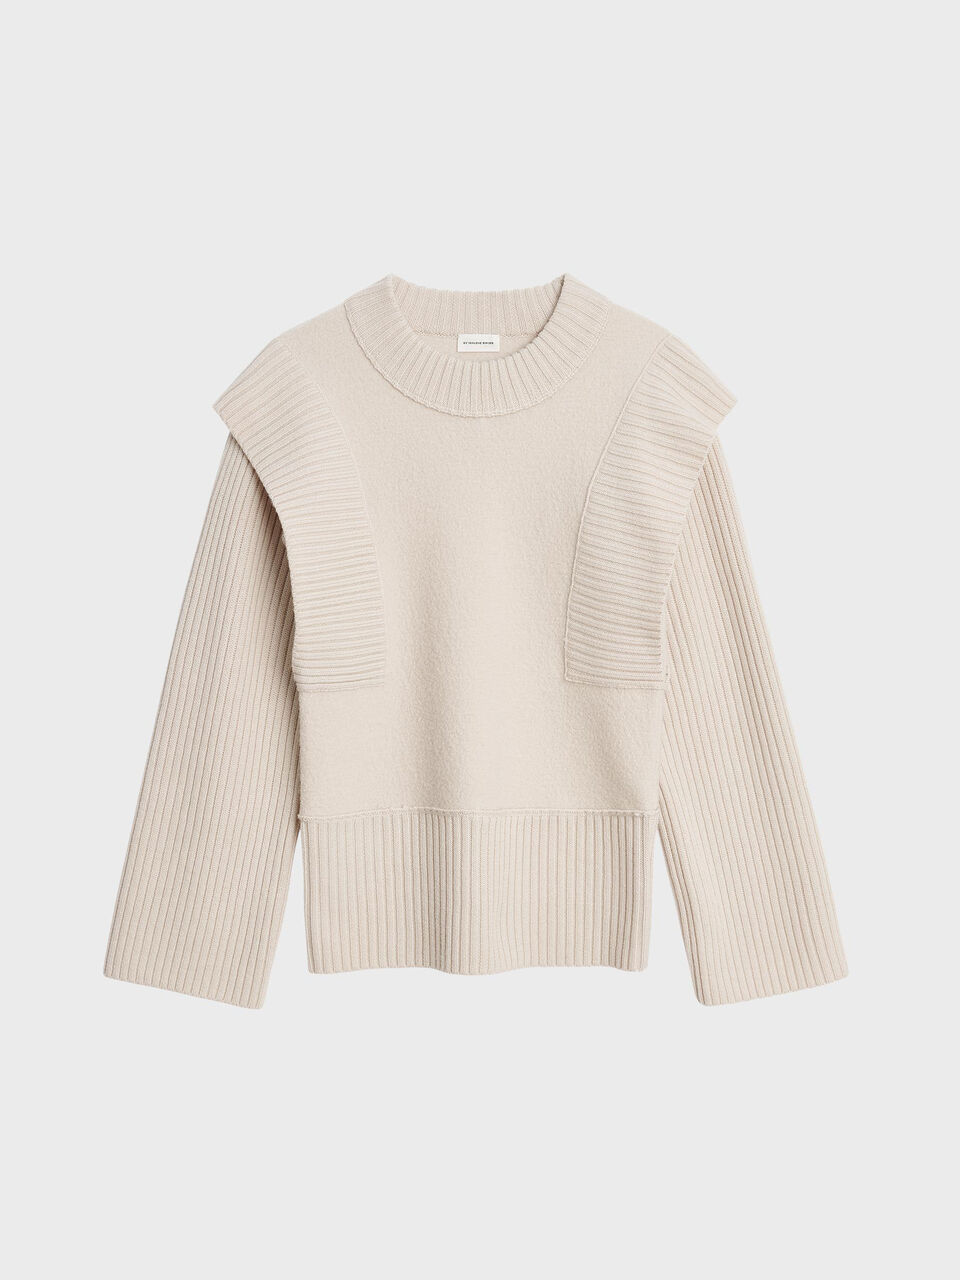 Besima wool sweater - Köp Knitwear online